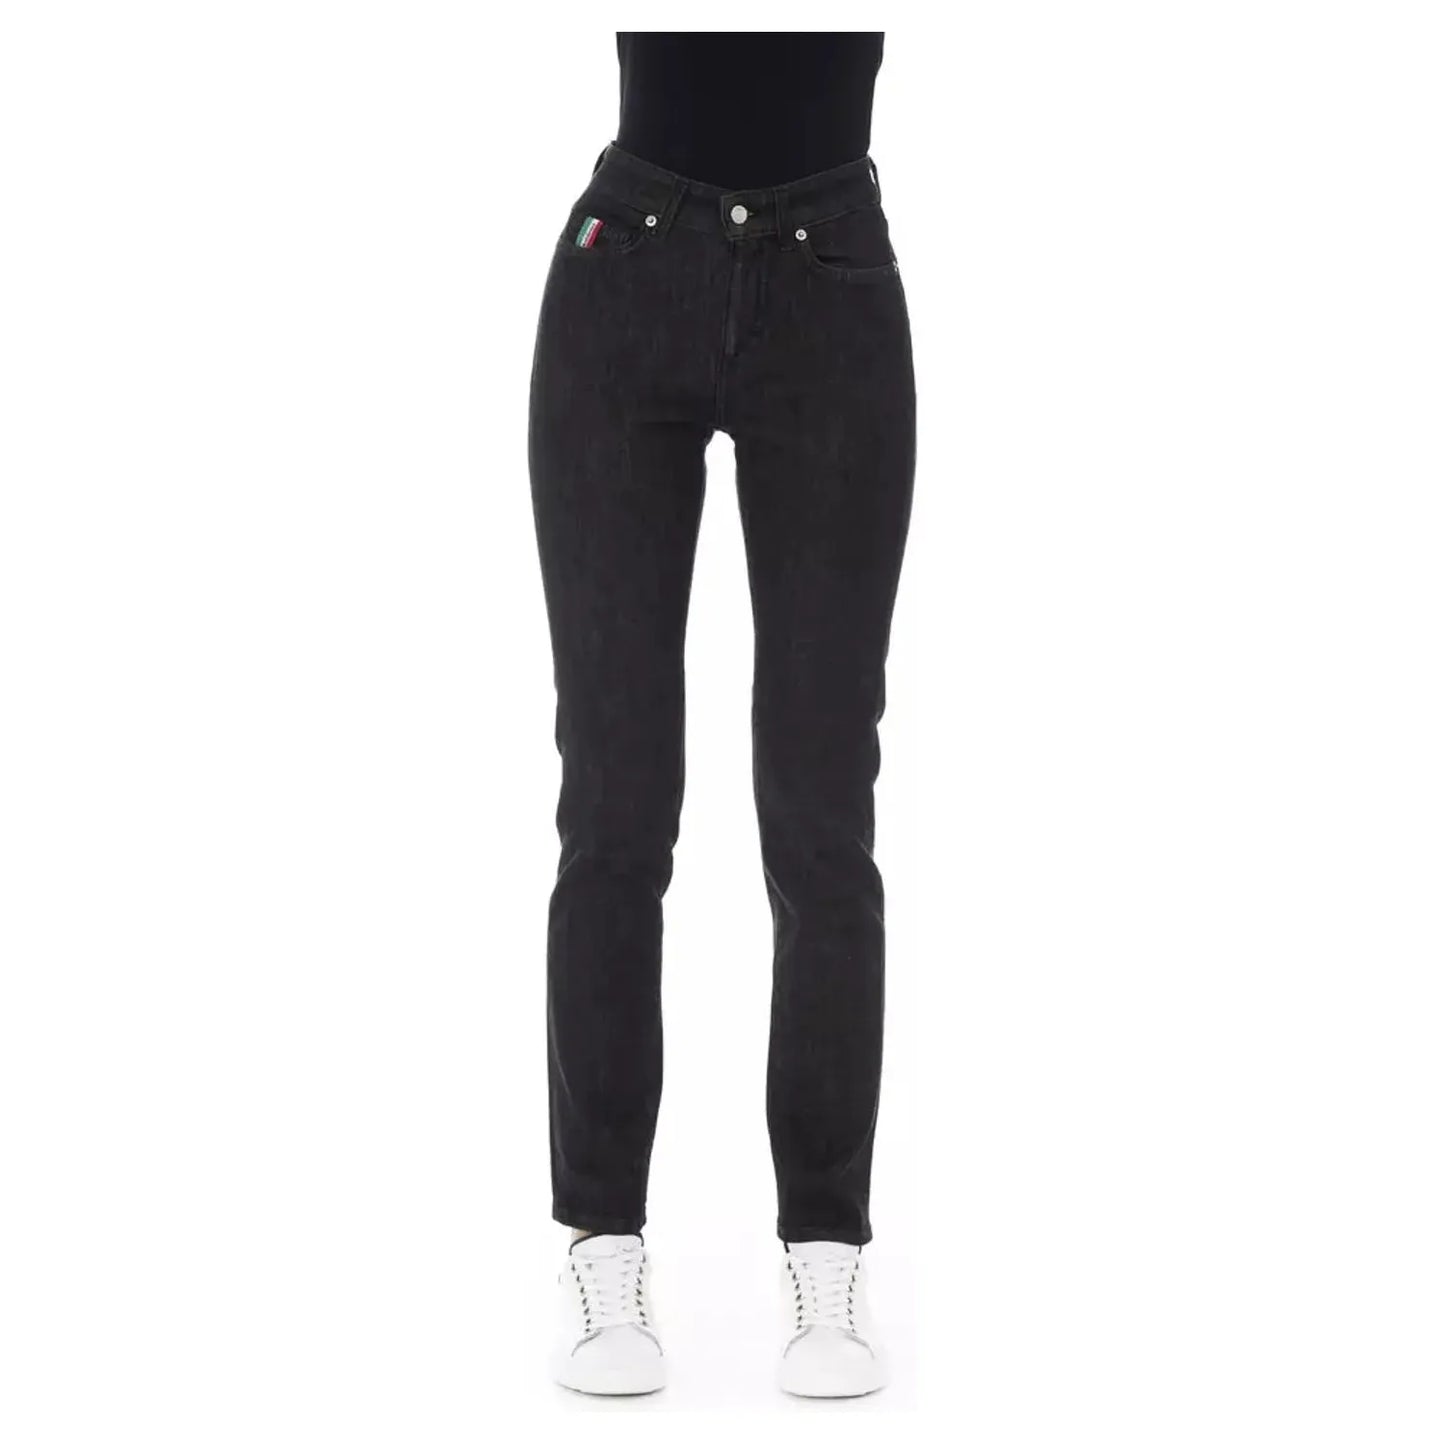 Baldinini Trend Chic Tricolor Accent Black Jeans black-cotton-jeans-pant-19